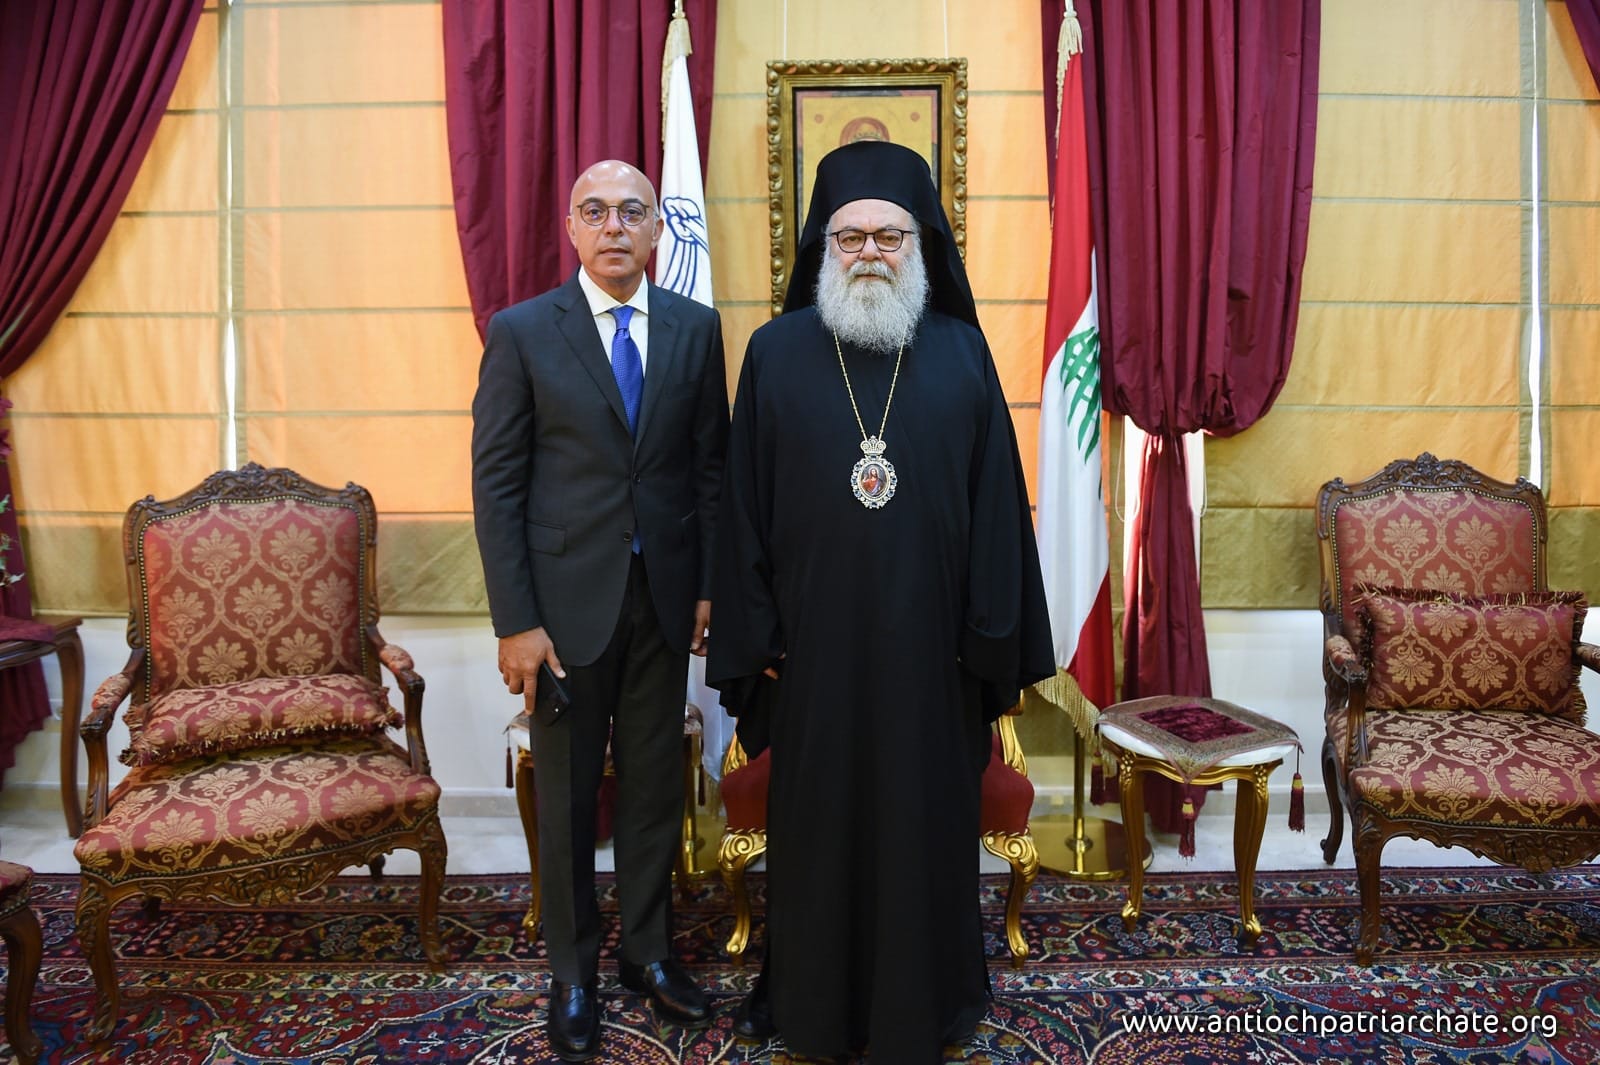 Le patriarche Jean d’Antioche rencontre le nouvel ambassadeur du Liban aux Émirats arabes unis